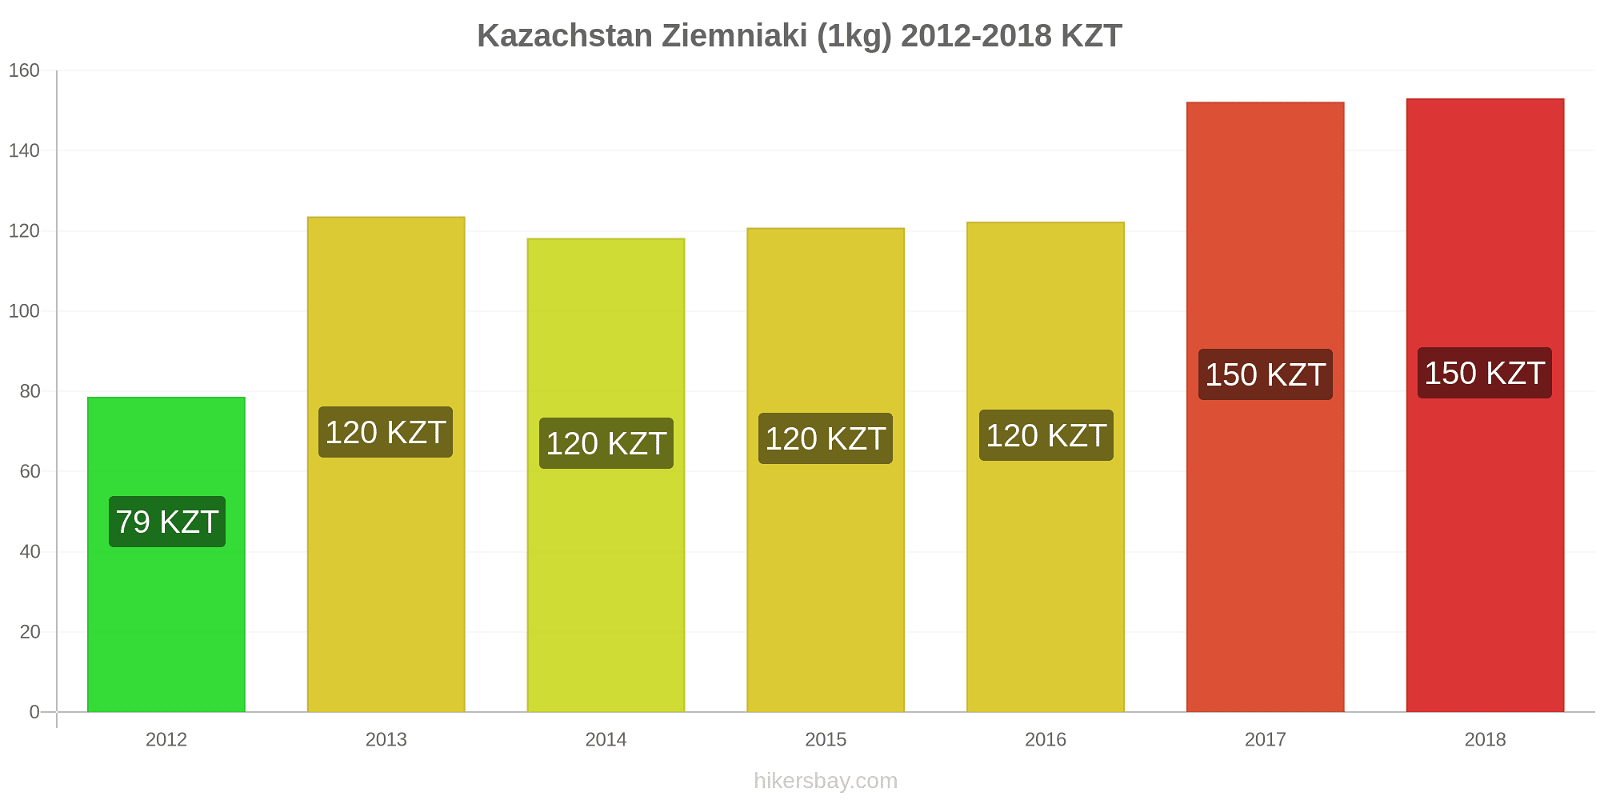 Kazachstan zmiany cen Ziemniaki (1kg) hikersbay.com